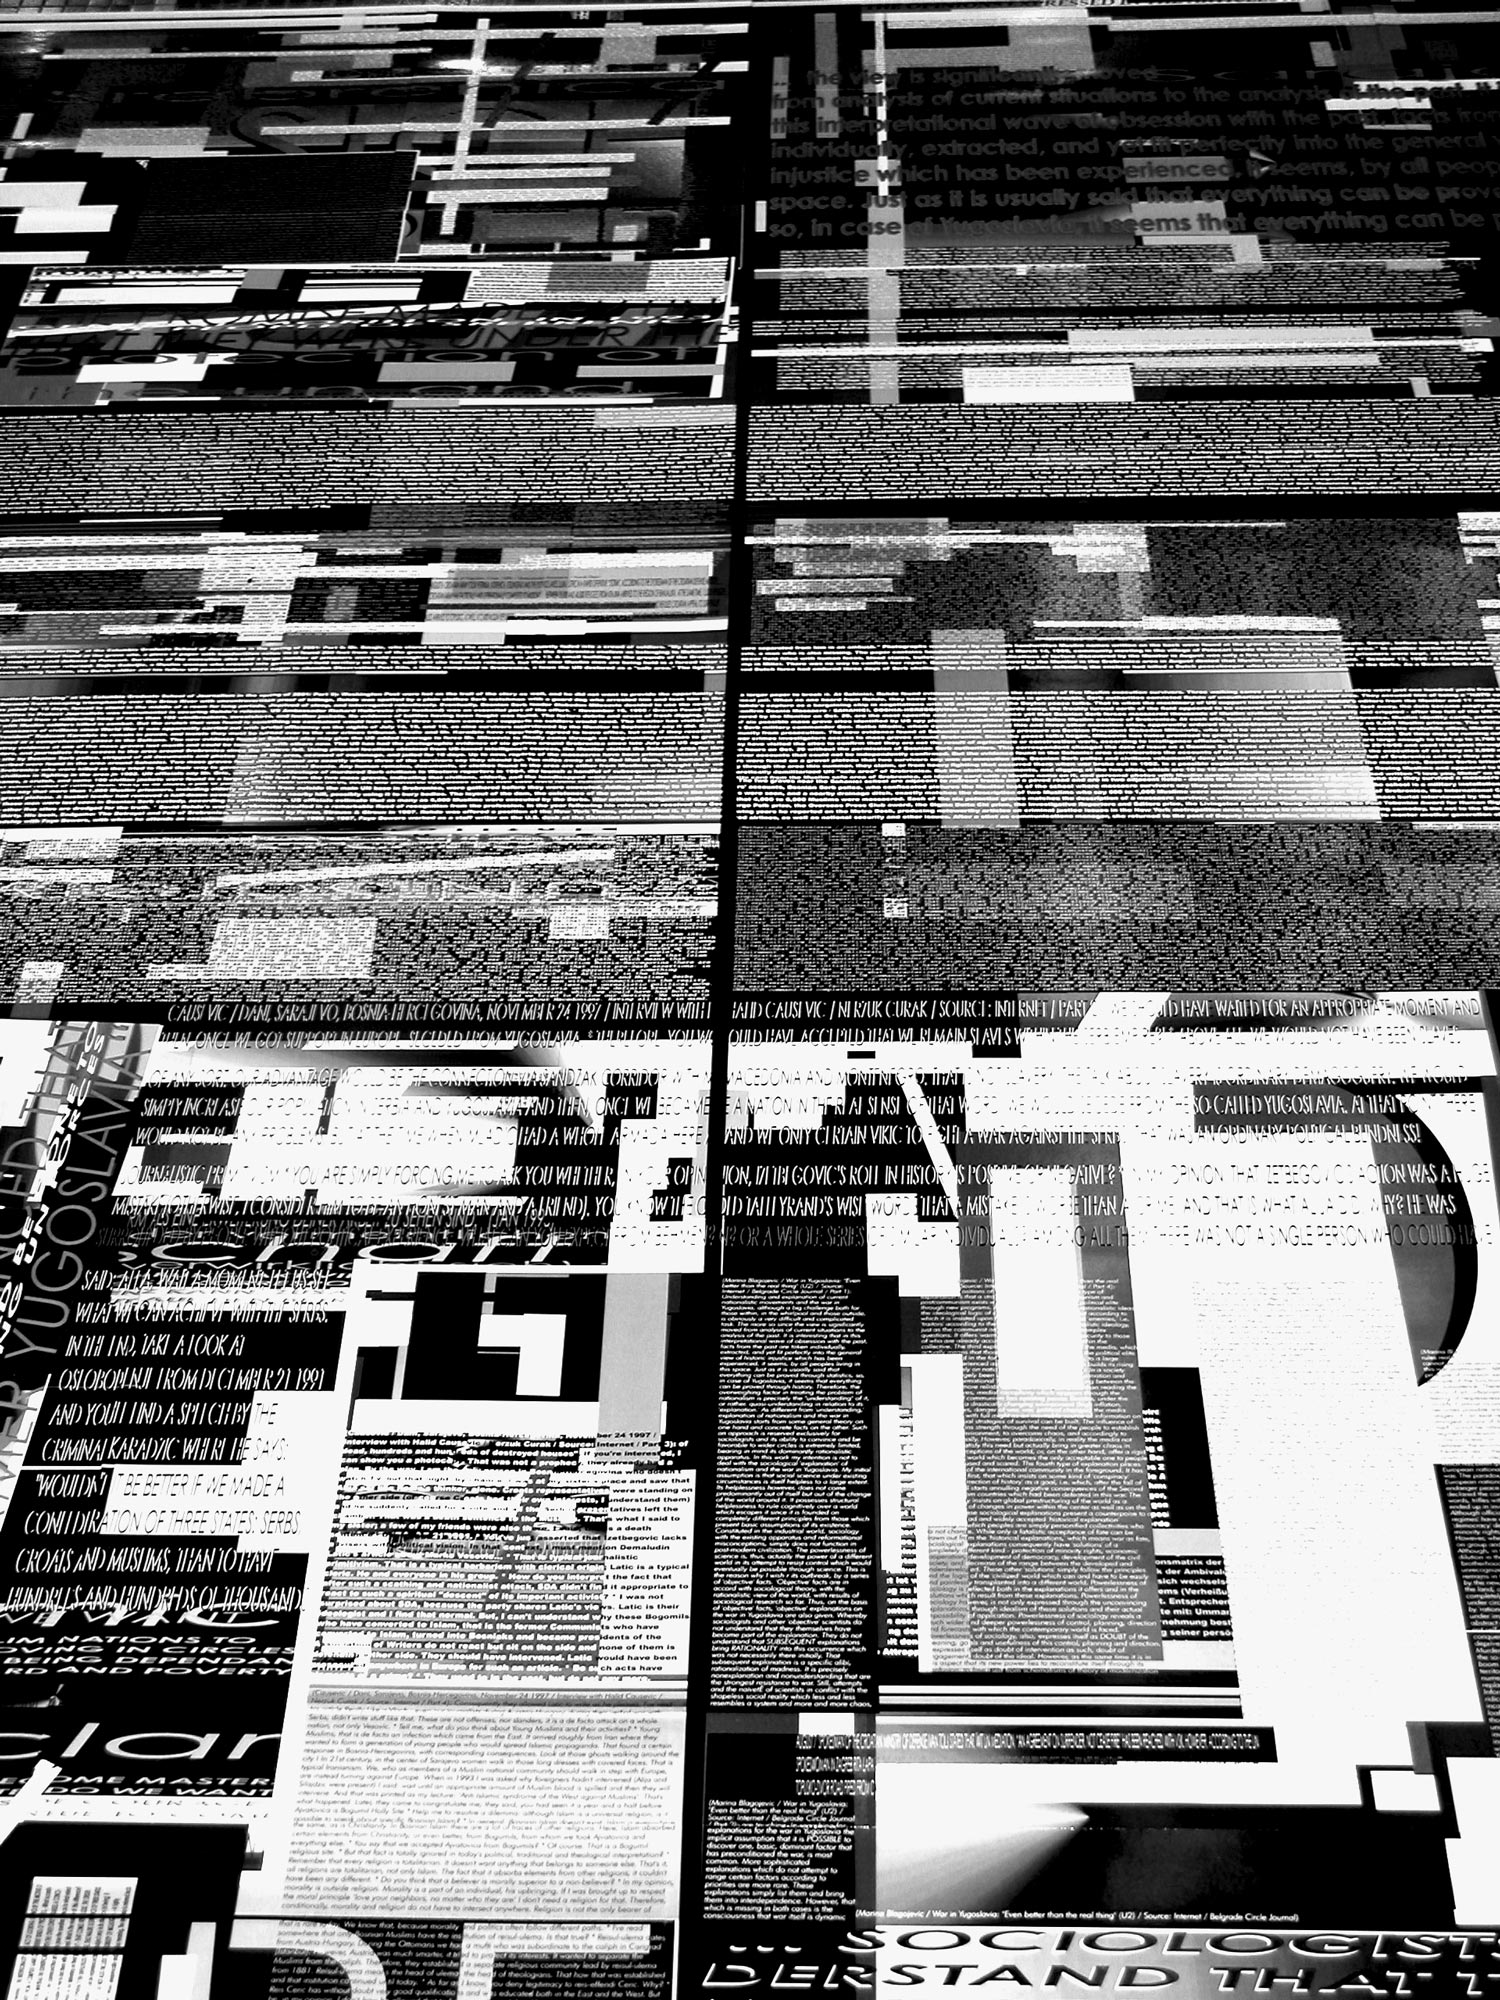 Herwig Steiner (1956L) / Textfields/Battlefields Discourses – Yugoslavia / Floorinstallation / computergenerierte Prints auf Papier / Muzej Istorije Jugoslavije, Beograd/SRB / 2002